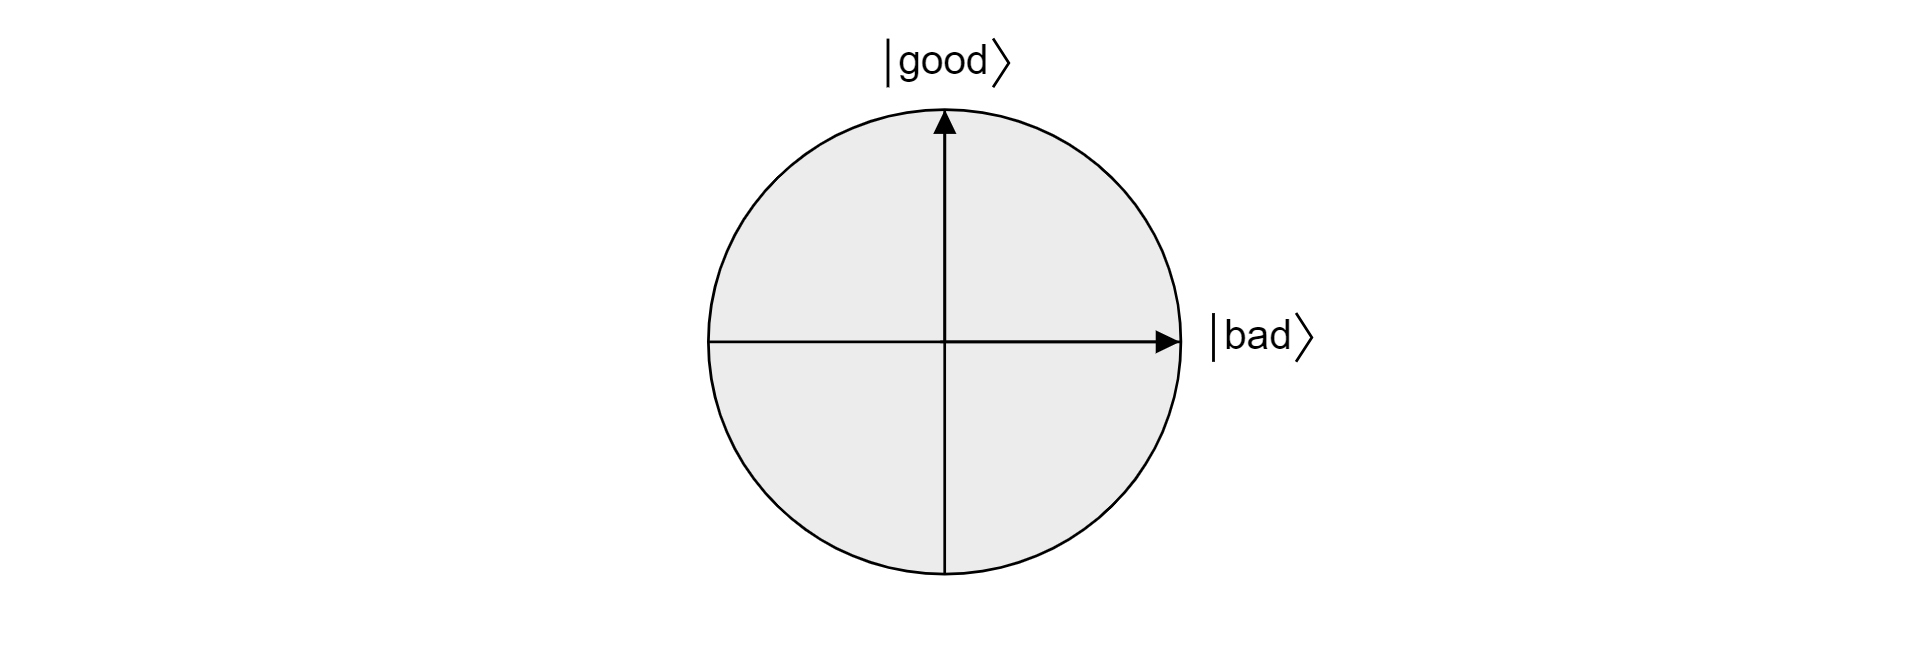 A Bloch-gömb síkjának ábrázolása, amelyet az ortogonális jó és rossz vektorok vetítettek ki.